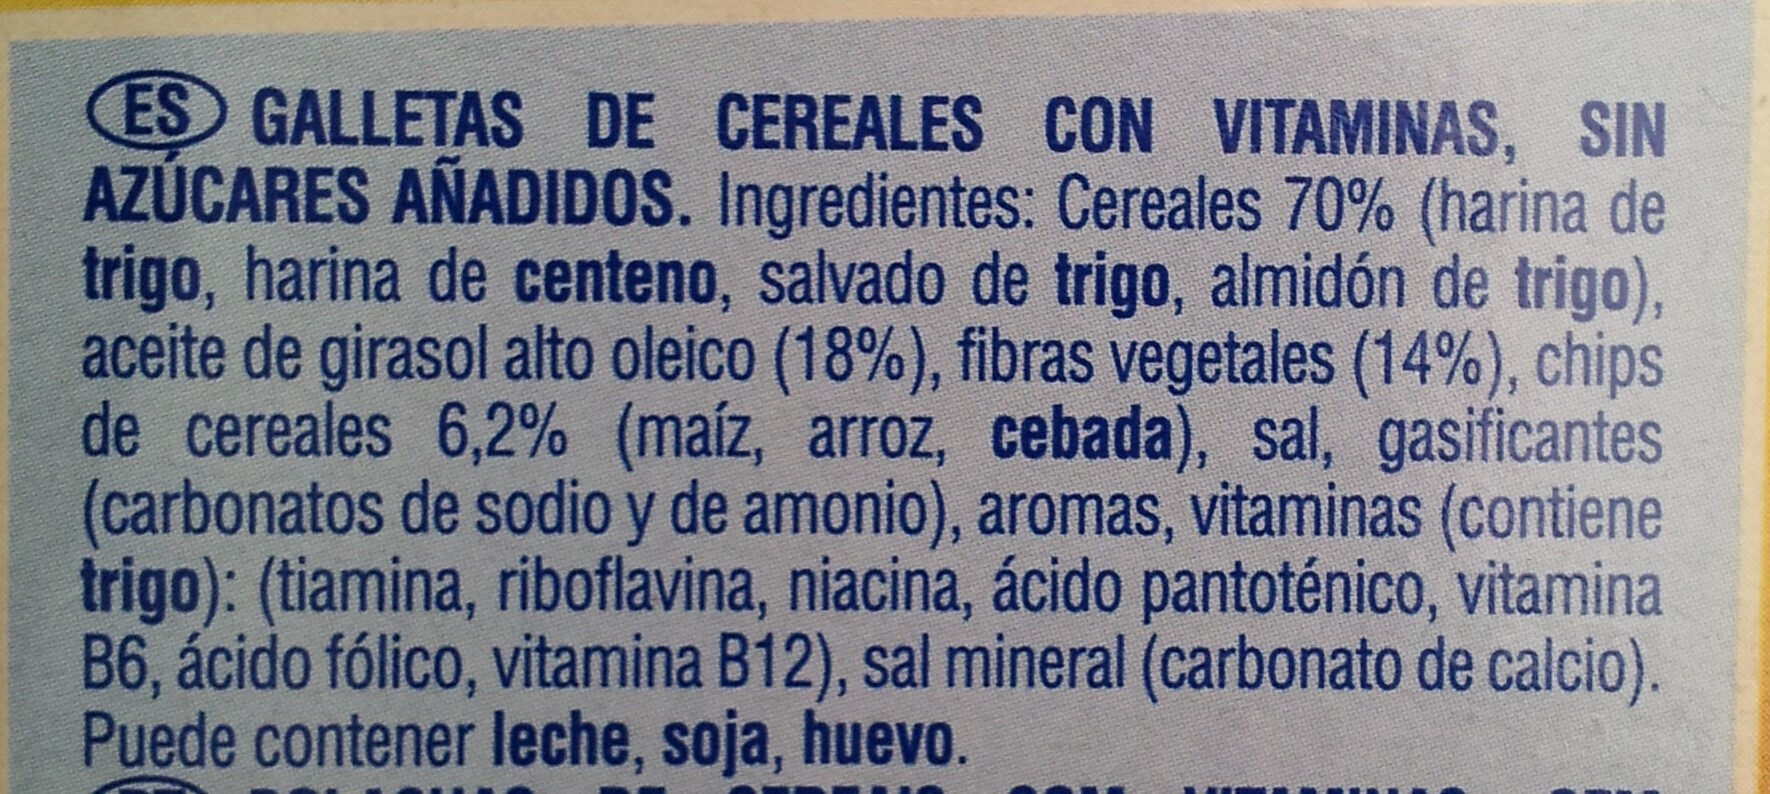 COOKIENSS Dinosaurios cucharadas cereales - Ingredients - es